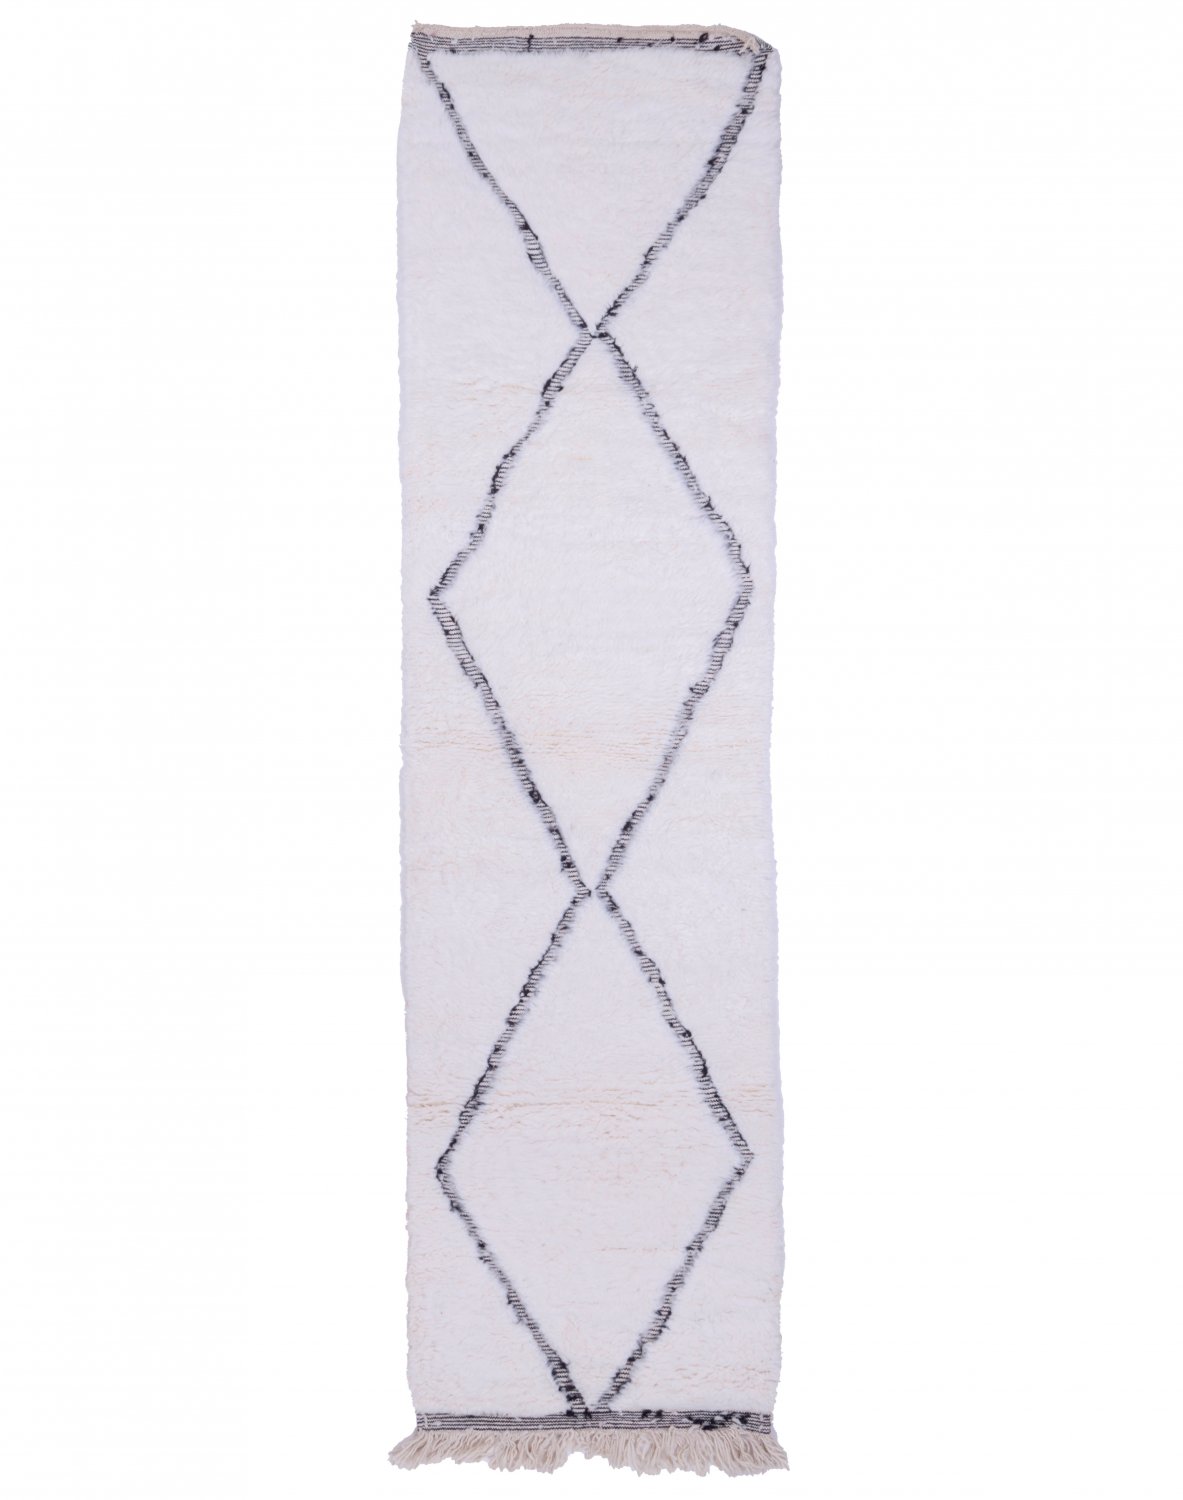 Marokkolainen Kilim matto Beni Ouarain 310 x 80 cm